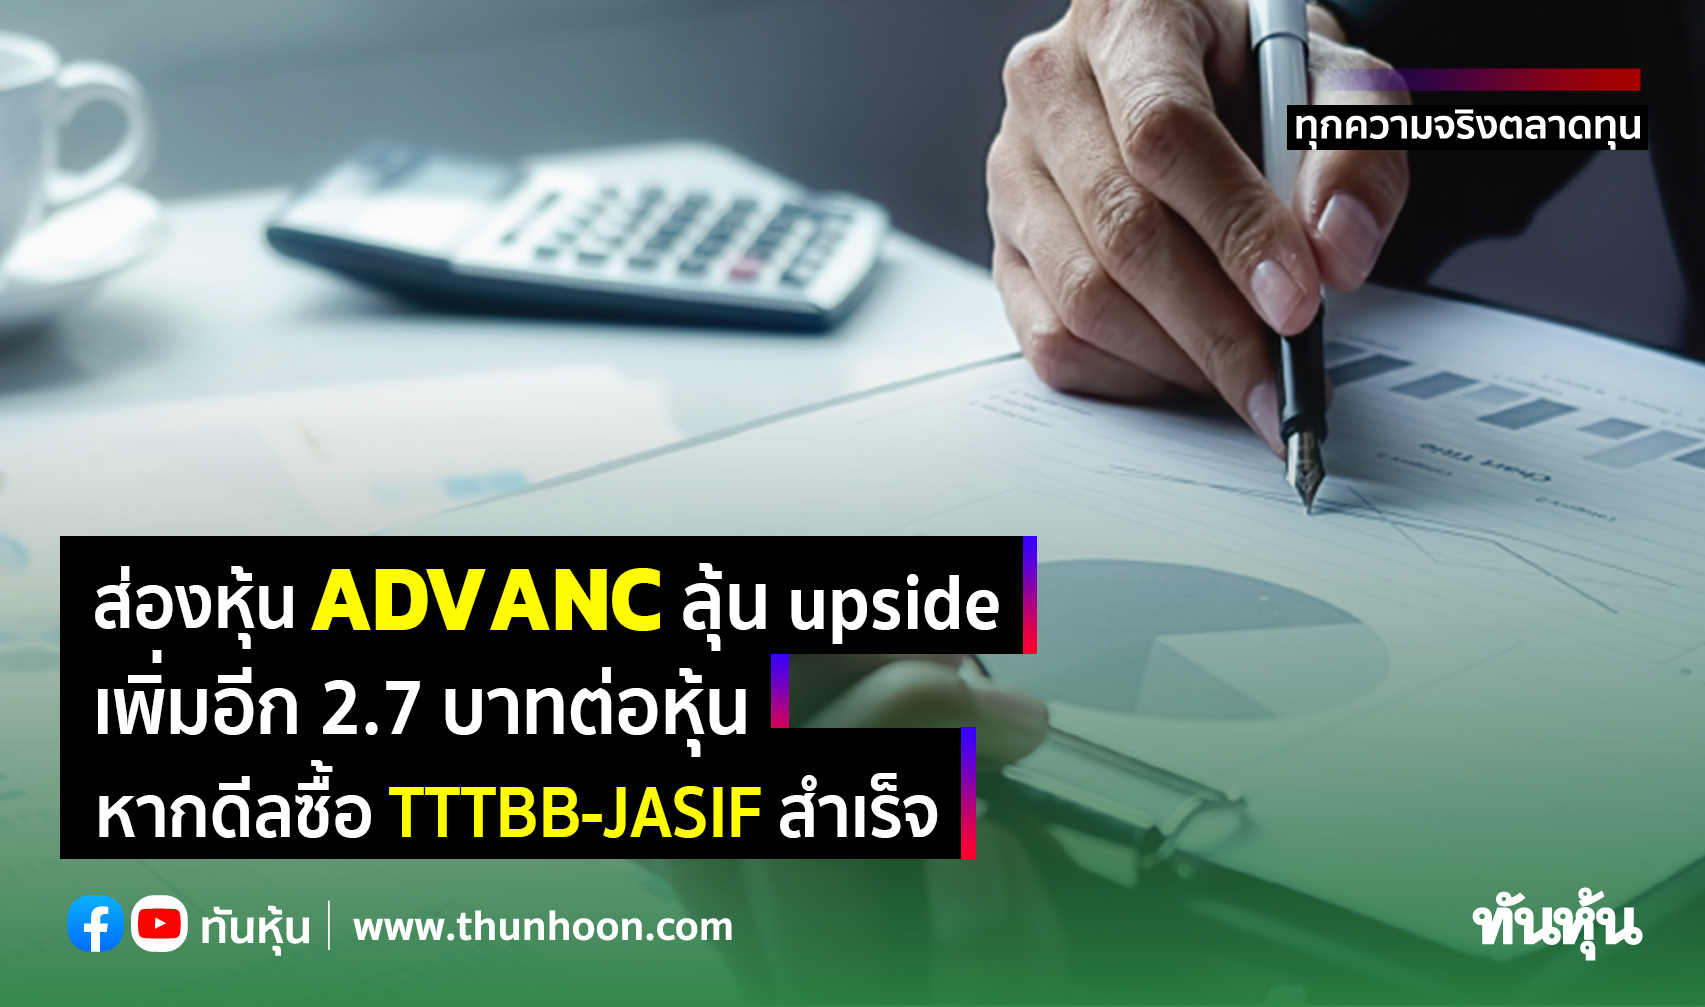 ส่องหุ้น ADVANC ลุ้น upside เพิ่มอีก 2.7 บาทต่อหุ้น หากดีลซื้อ TTTBB-JASIF สำเร็จ